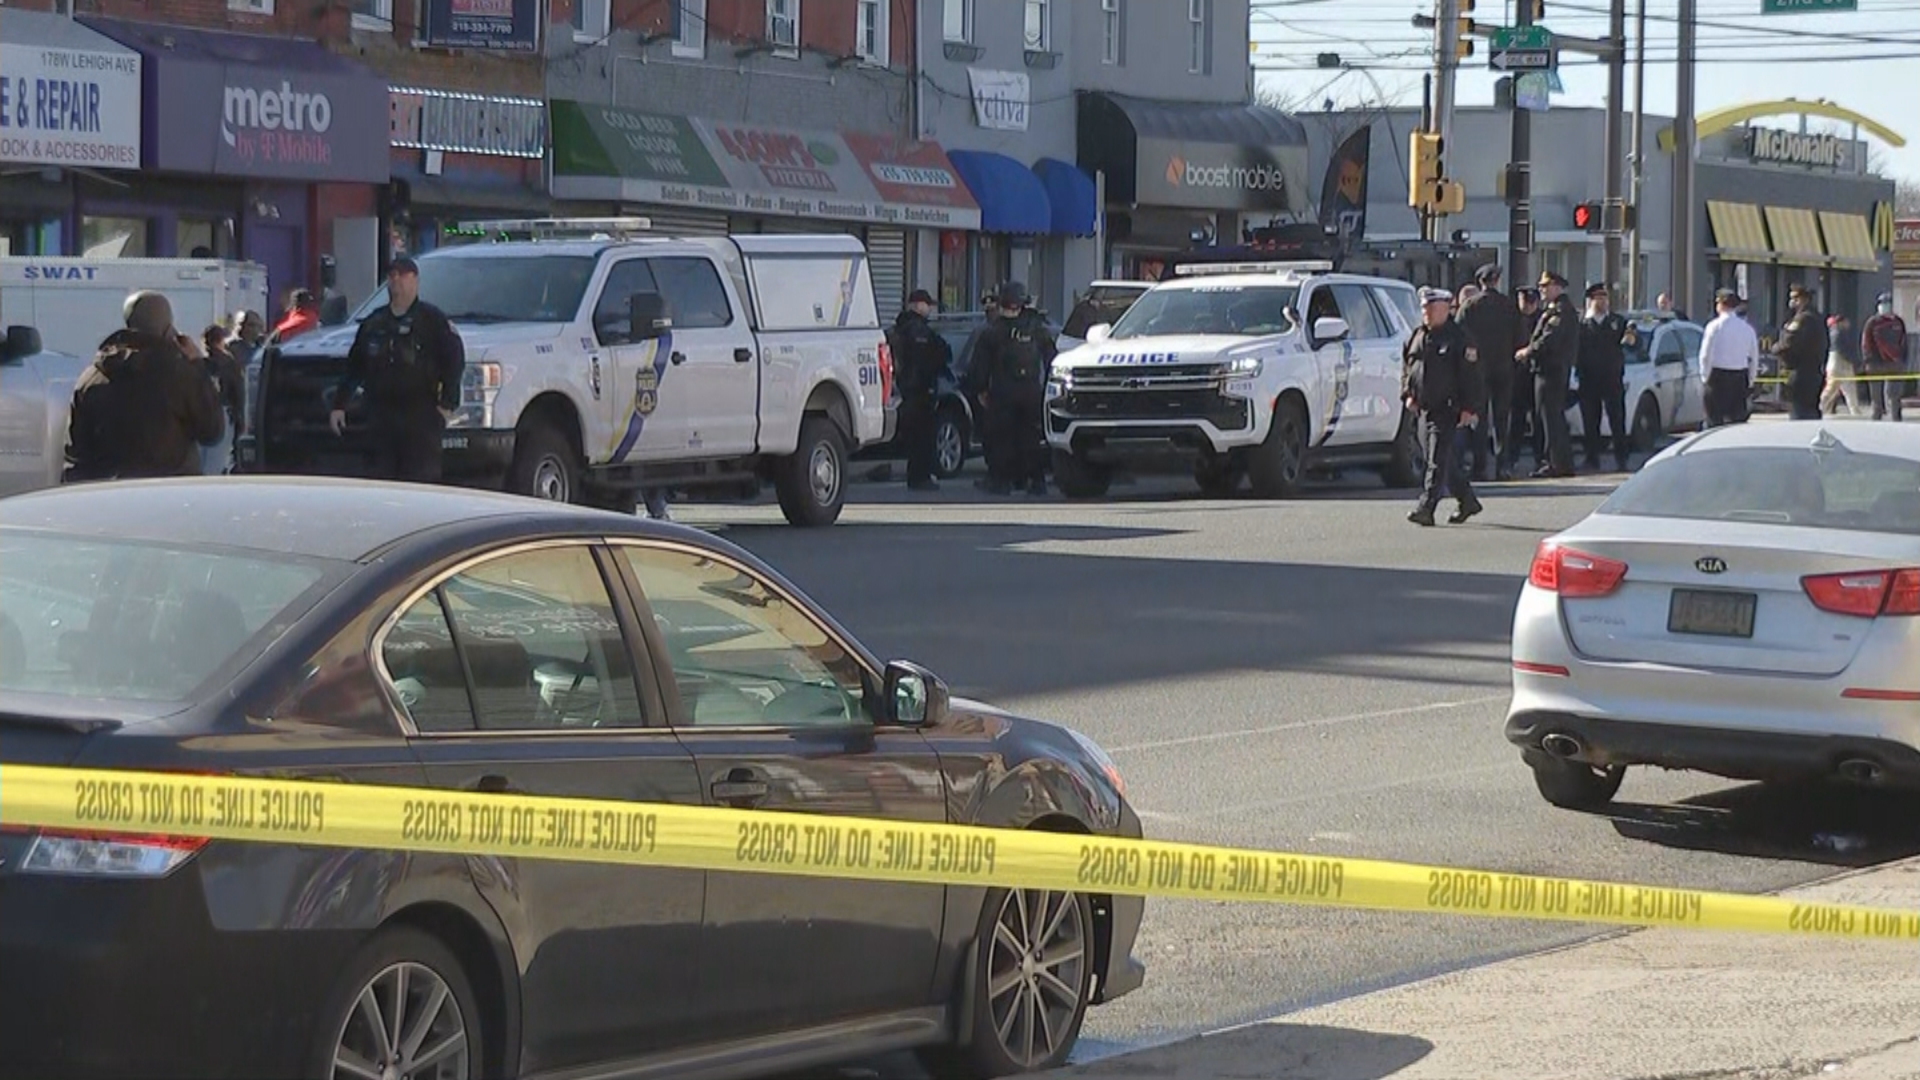 Philadelphia Police Officer Shot While Serving Warrant In Fairhill Neighborhood